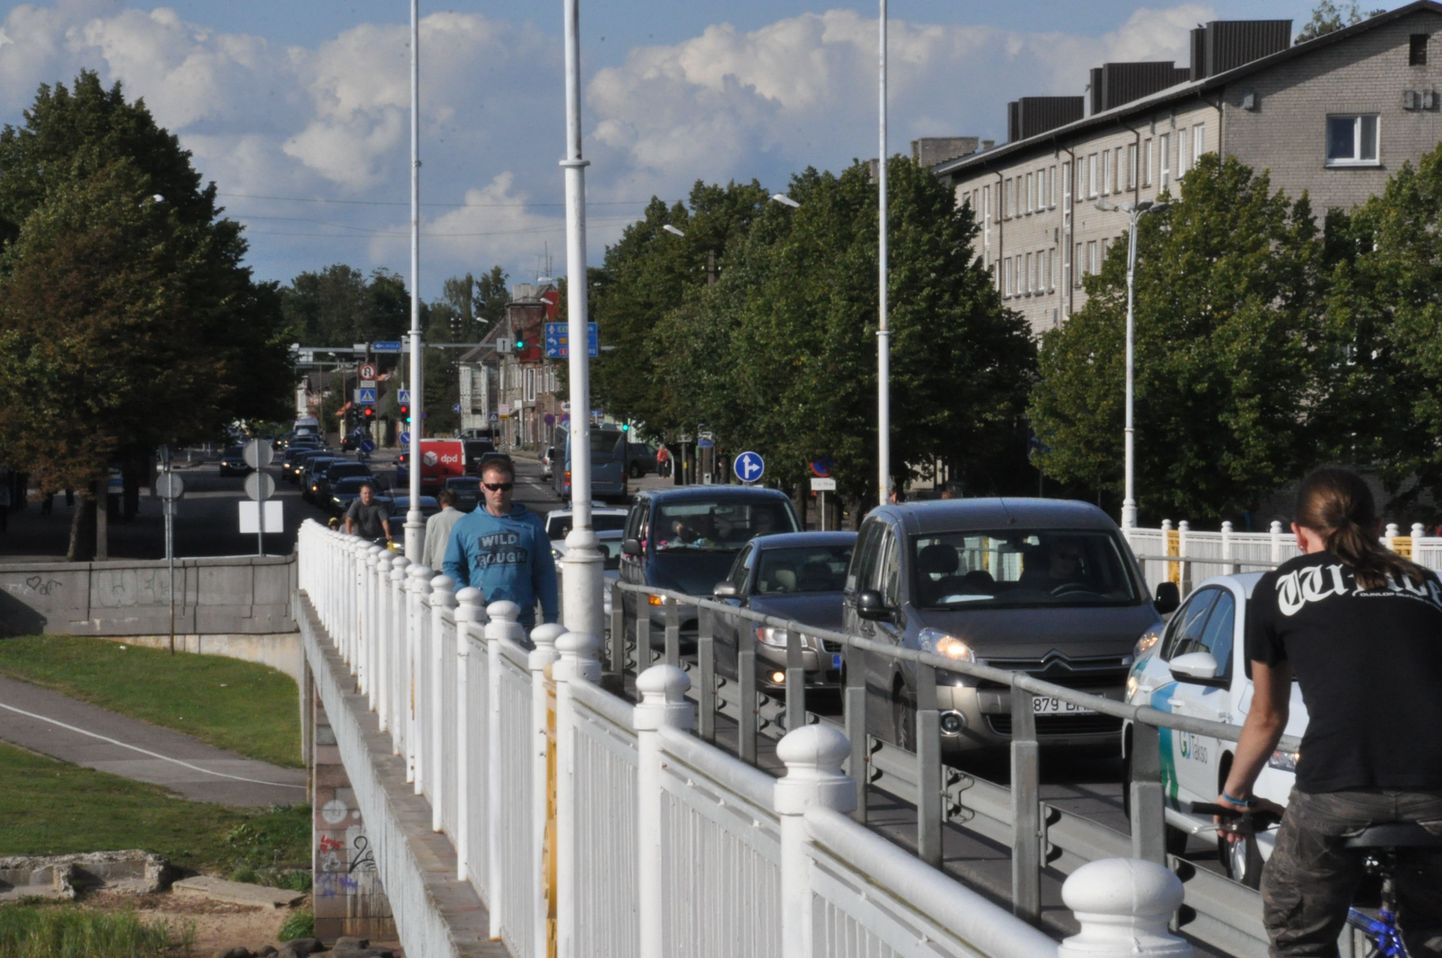 Liiklusolud reedel kella 17 ajal Pärnu kesklinna silla juures, kus asuti tegema ettevalmistusi Jaansoni jooksuks.